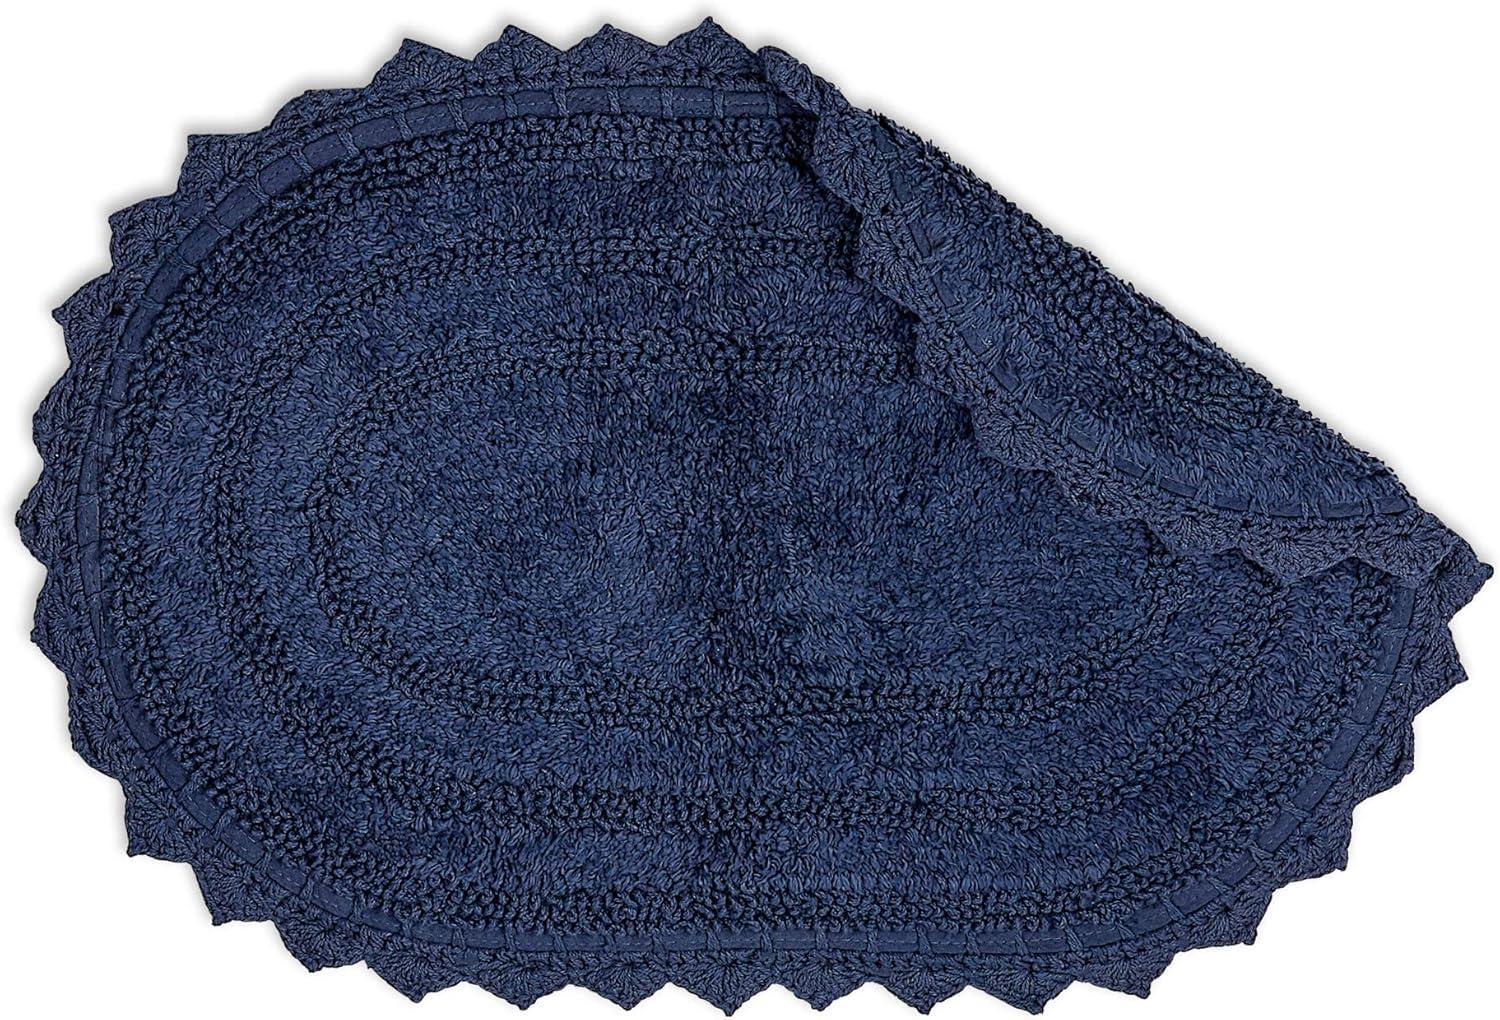 French Blue Small Oval Crochet Bath Rug, 17x24